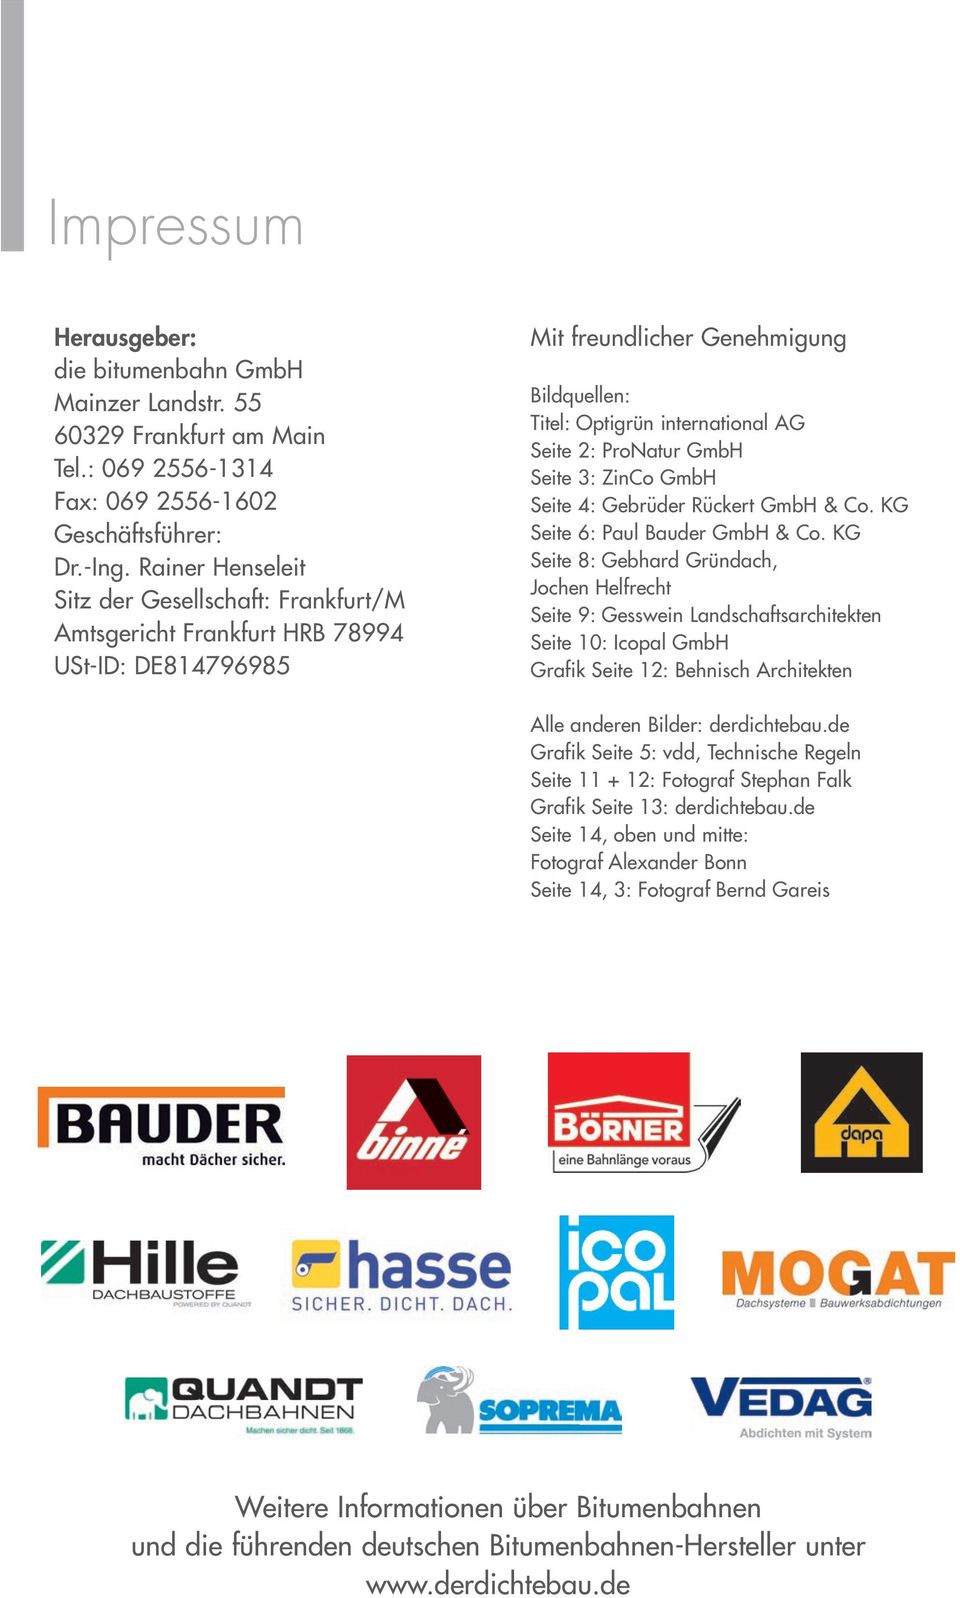 GmbH Seite 3: ZinCo GmbH Seite 4: Gebrüder Rückert GmbH & Co. KG Seite 6: Paul Bauder GmbH & Co.